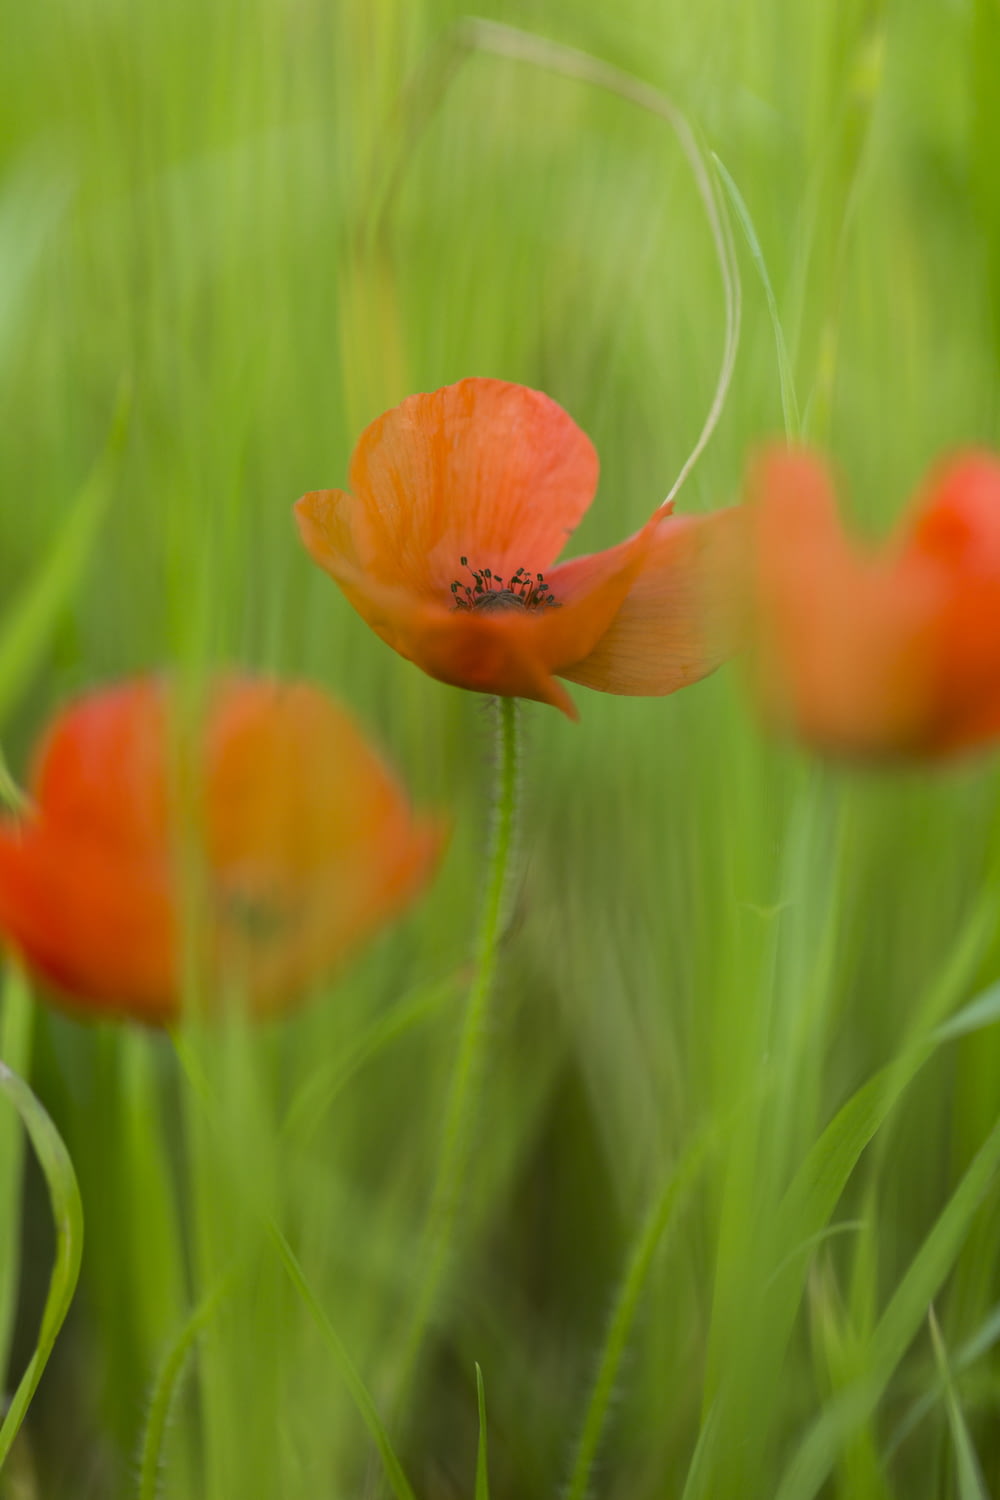 orange flower in green grass during daytime